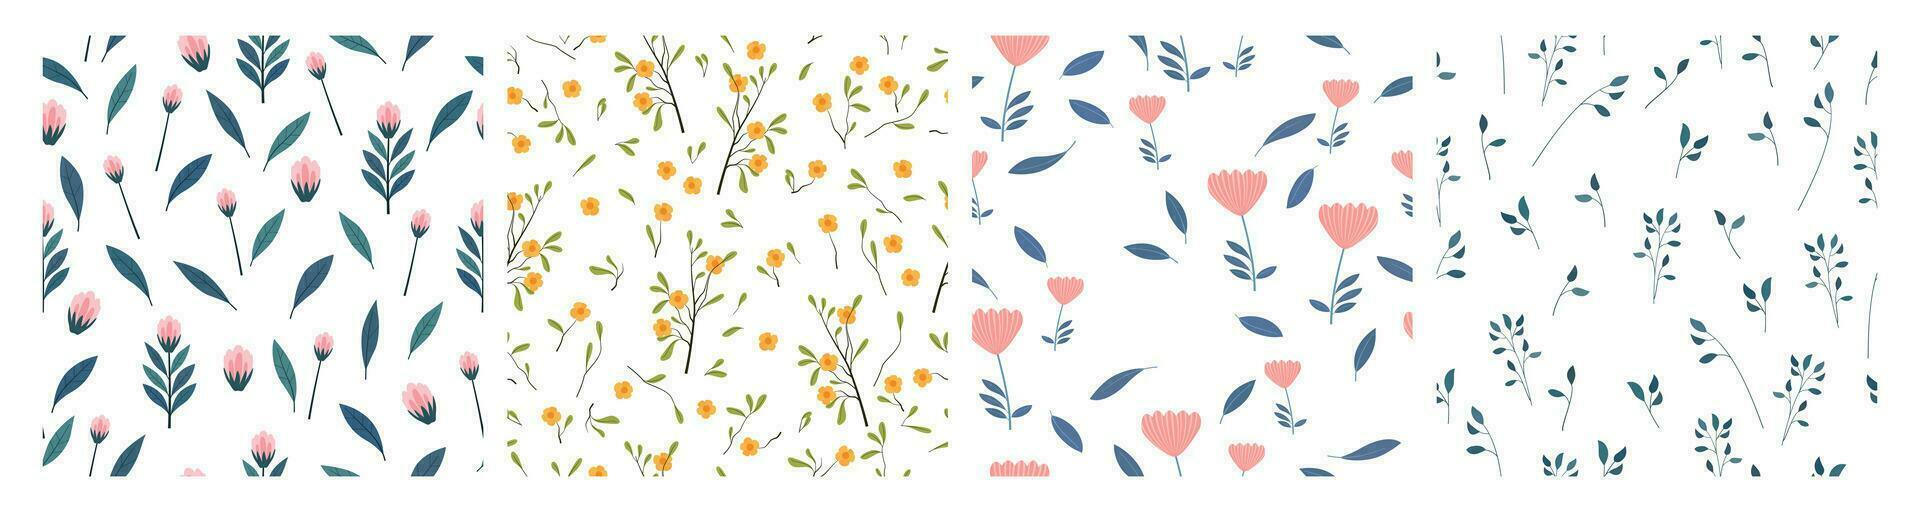 conjunto de floral sin costura patrones. mano dibujado flores, hojas y ramas vector